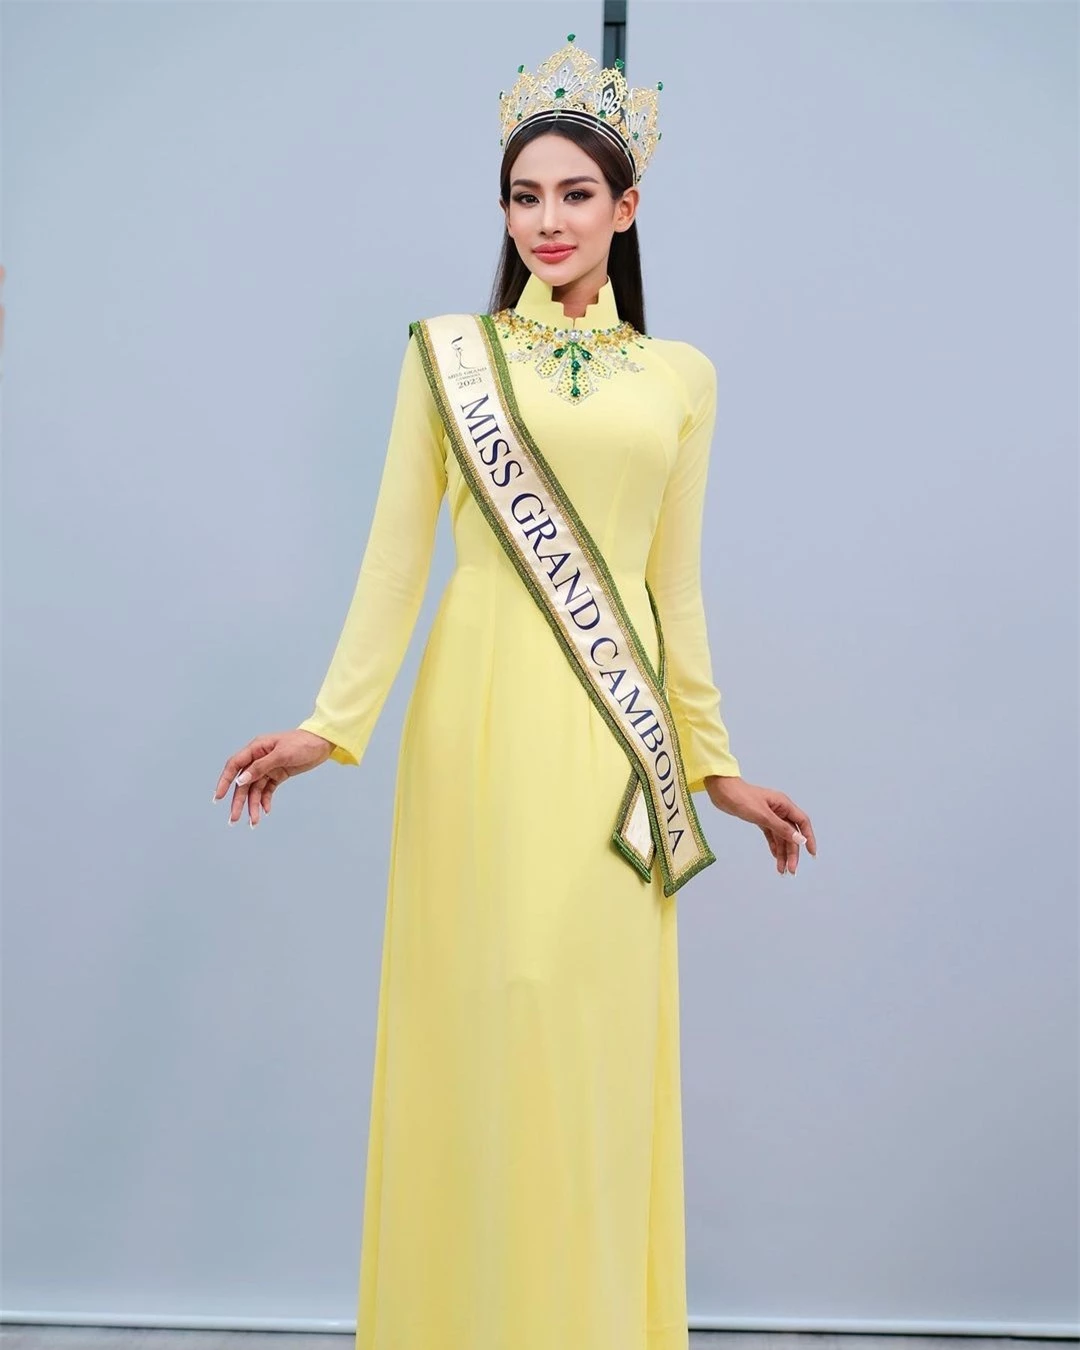 Hoa hậu Hòa bình Campuchia mặc áo dài, nói tiếng Việt ảnh 3